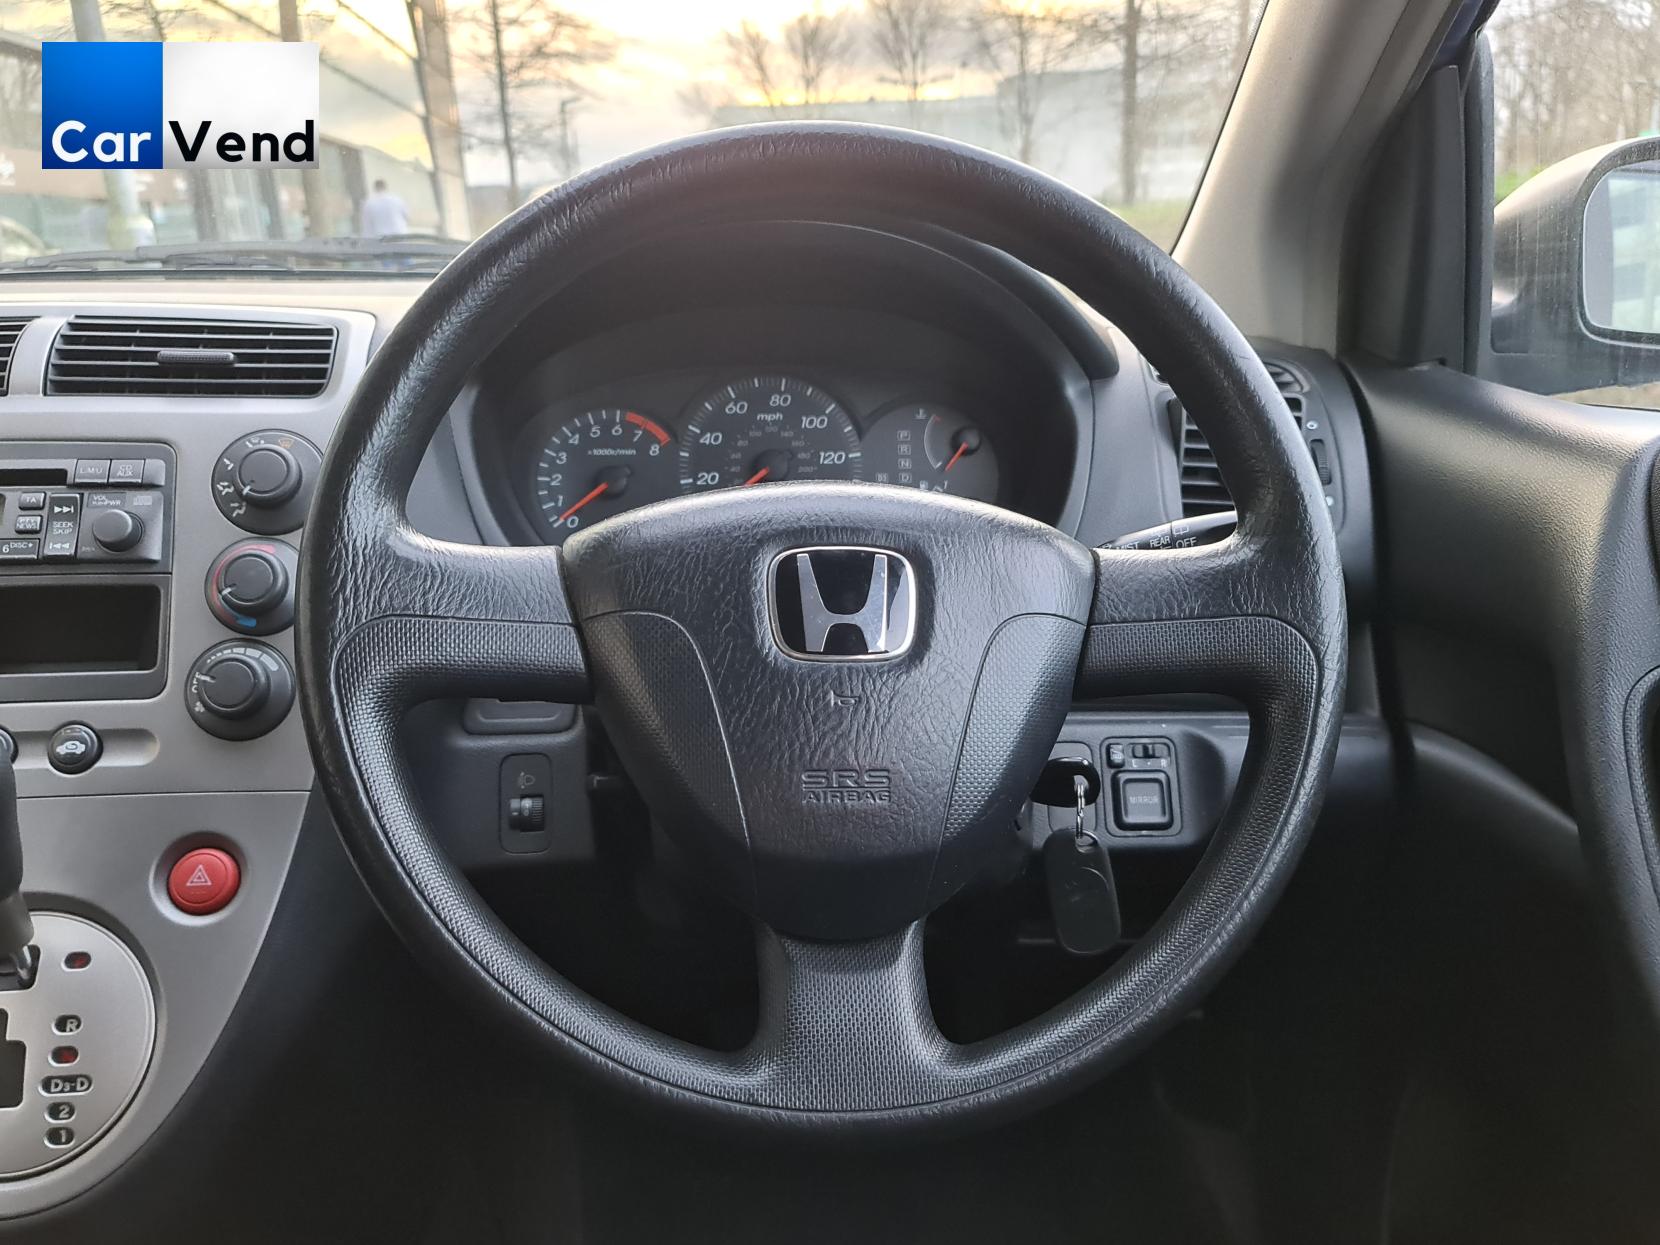 Honda Civic 1.6 i-VTEC S Hatchback 5dr Petrol Automatic (169 g/km, 108 bhp)